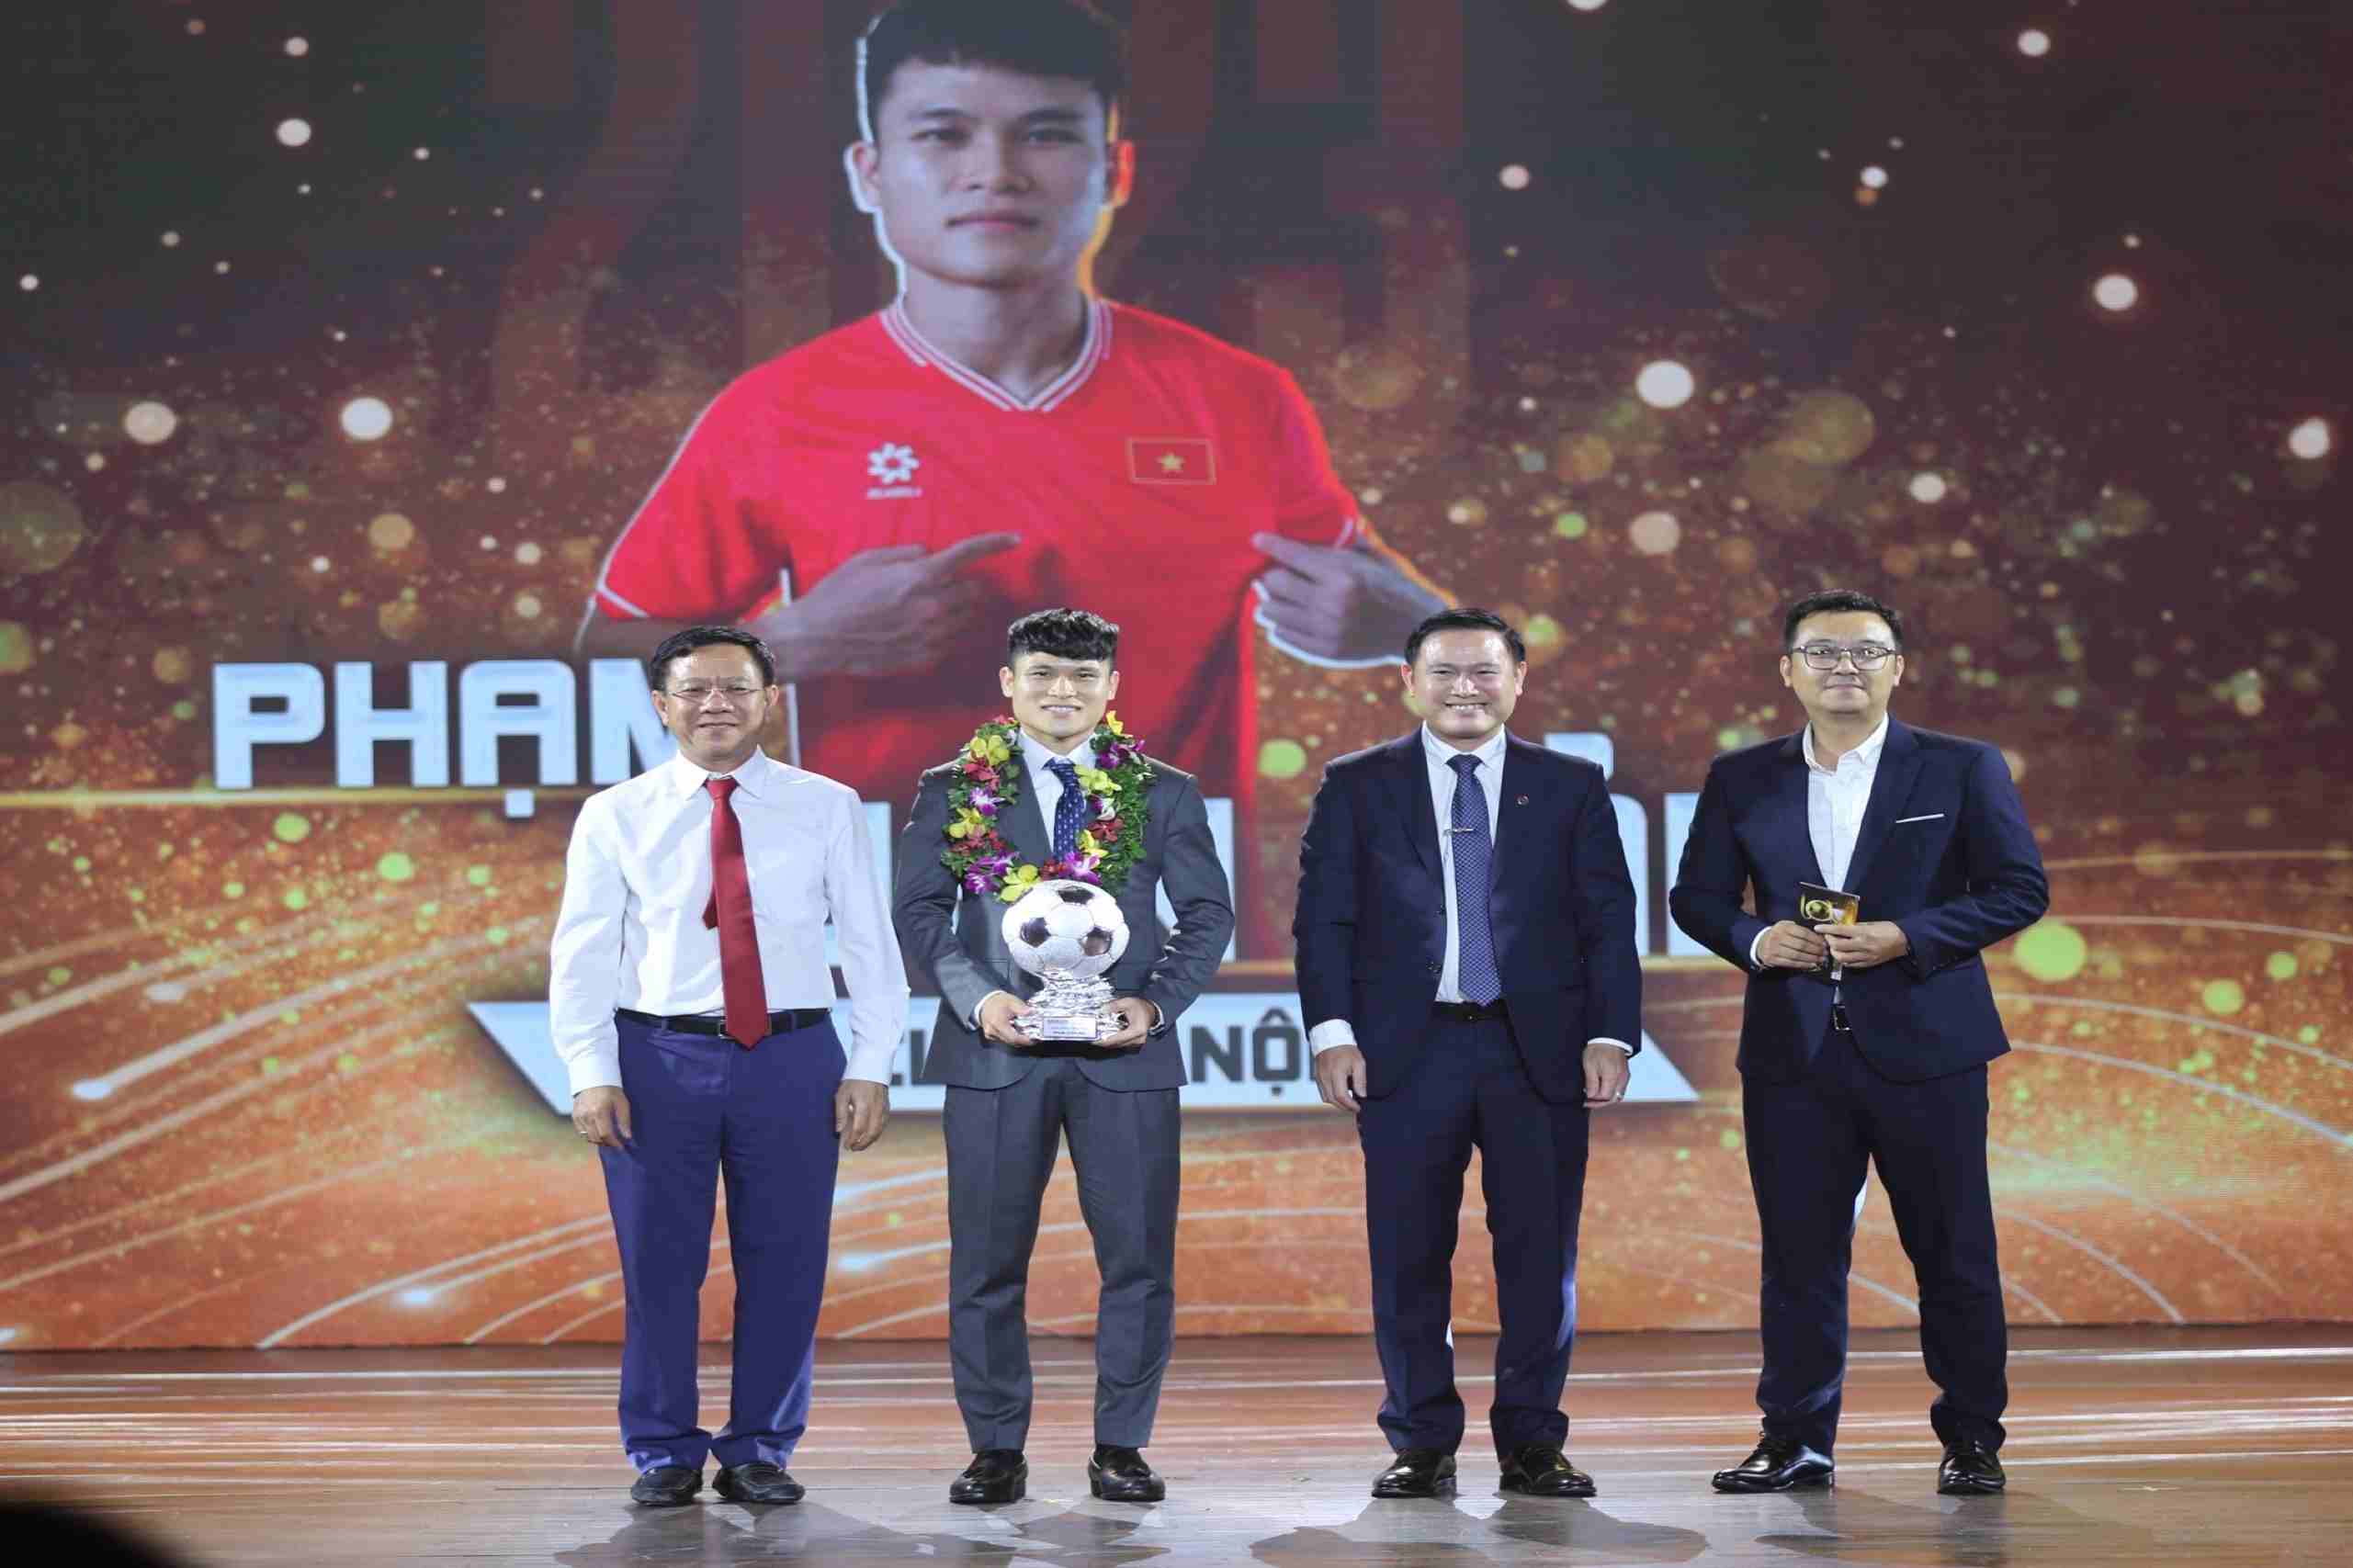 Phạm Tuấn Hải cùng danh hiệu Quả bóng bạc Việt Nam 2023 hứa hẹn sẽ có thêm động lực ở hành trình trước mắt. Ảnh: Thanh Vũ